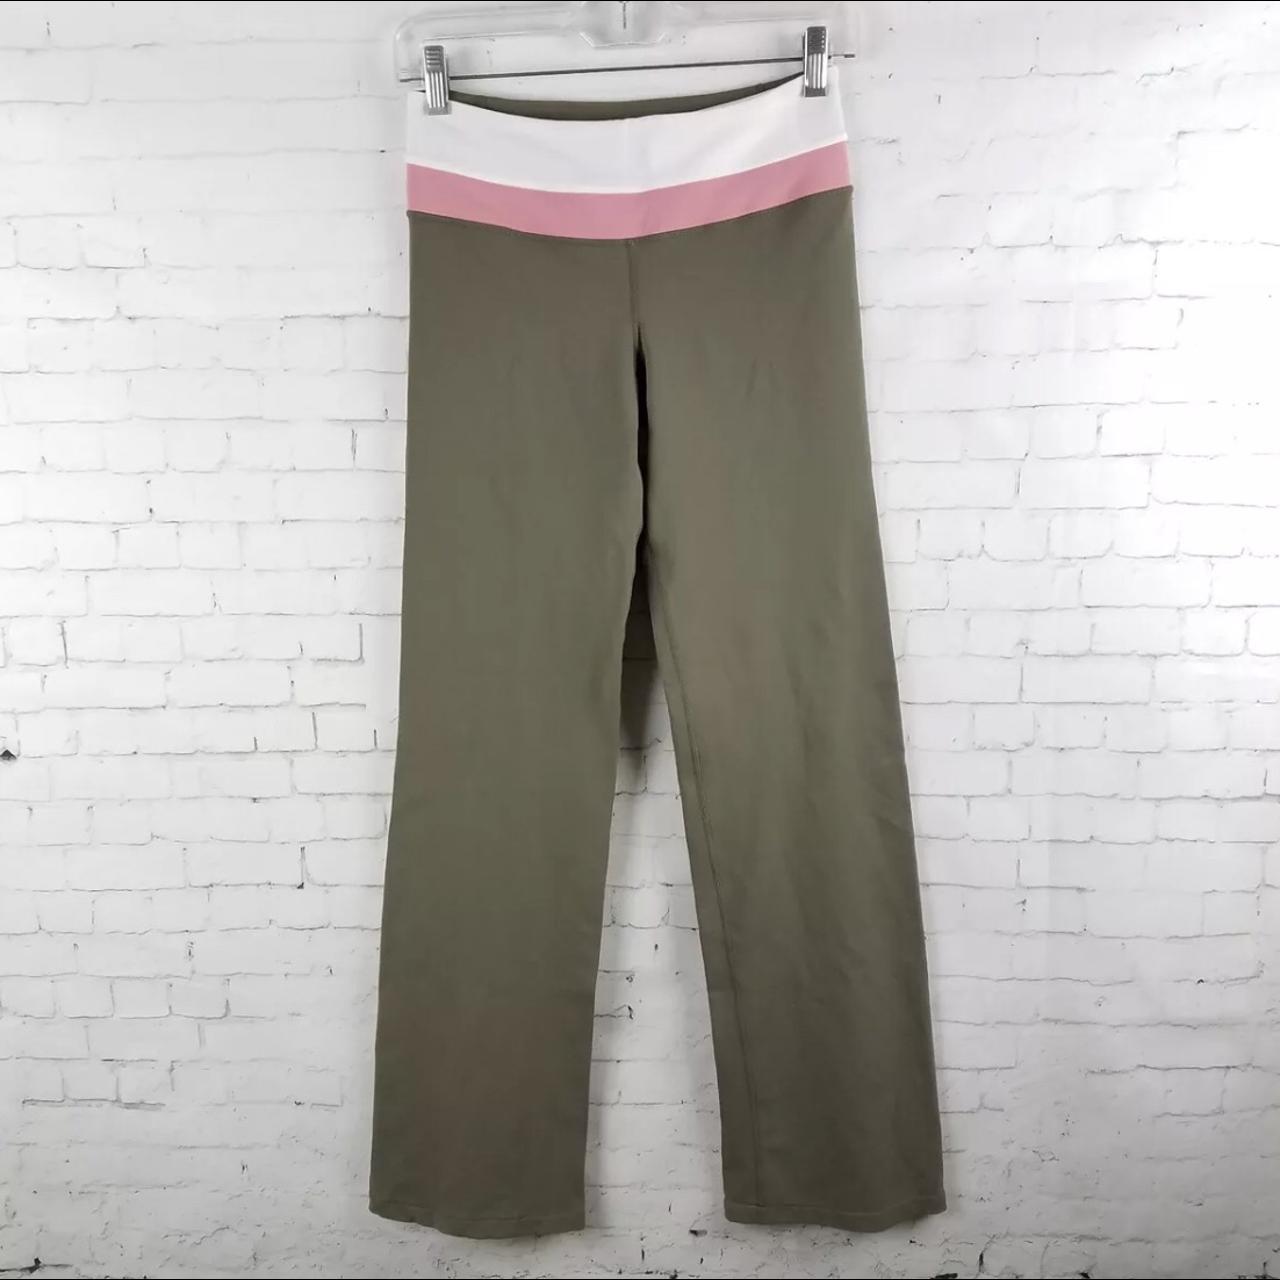 Lululemon Groove Pants Size 6 Size 6 Inseam 31 In - Depop